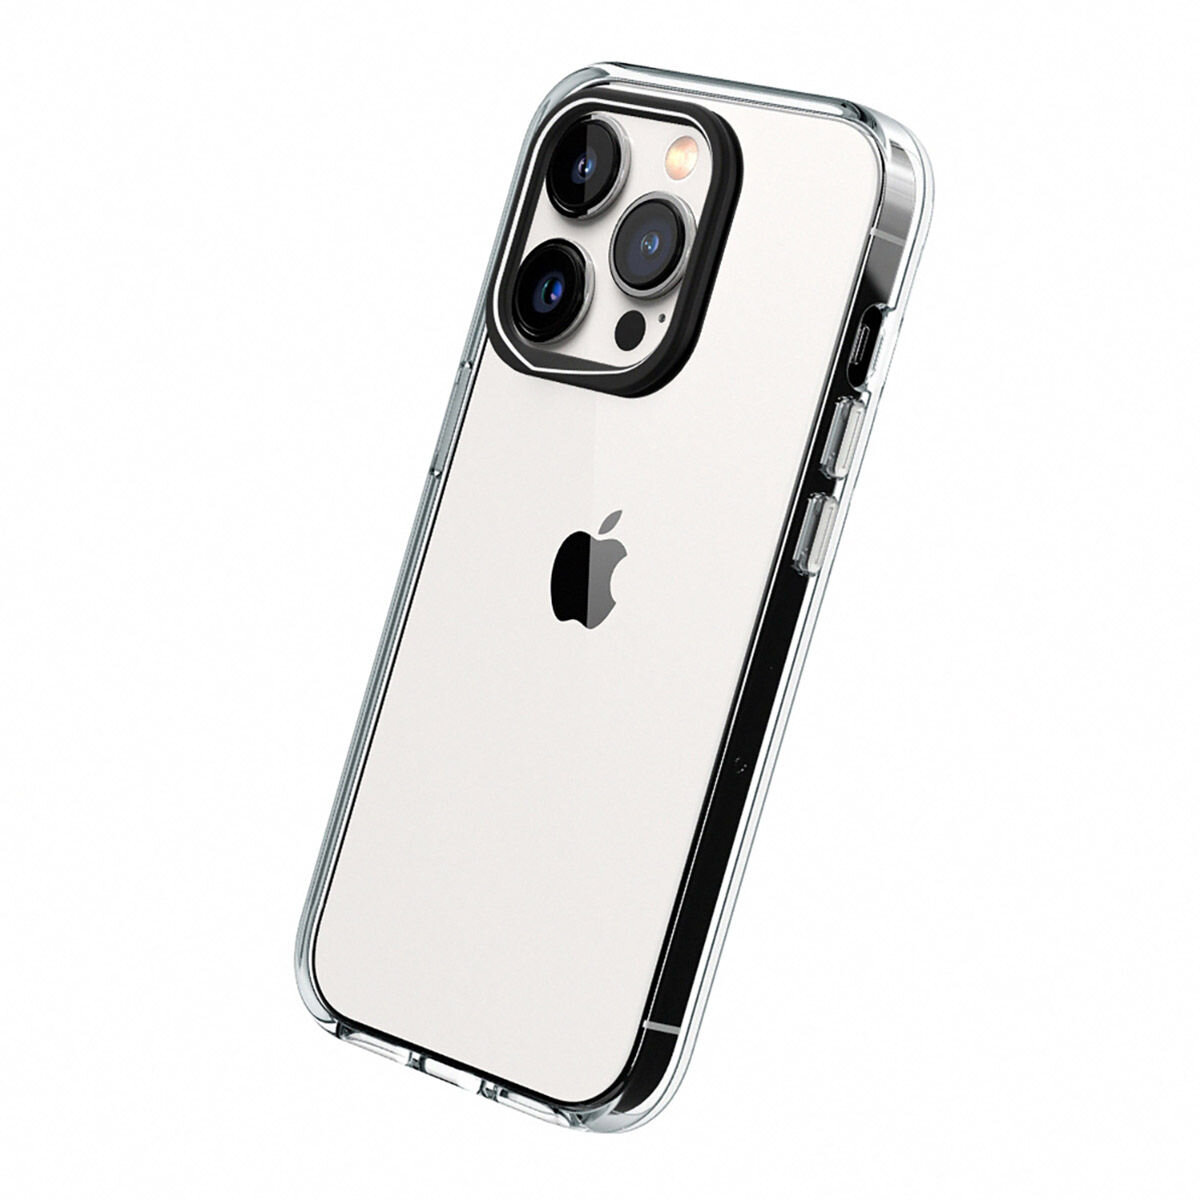 犀牛盾 iPhone 14 Pro Clear 透明防摔手機殼 + 9H 3D滿版螢幕玻璃保護貼 + 手機掛繩 絲綢橘